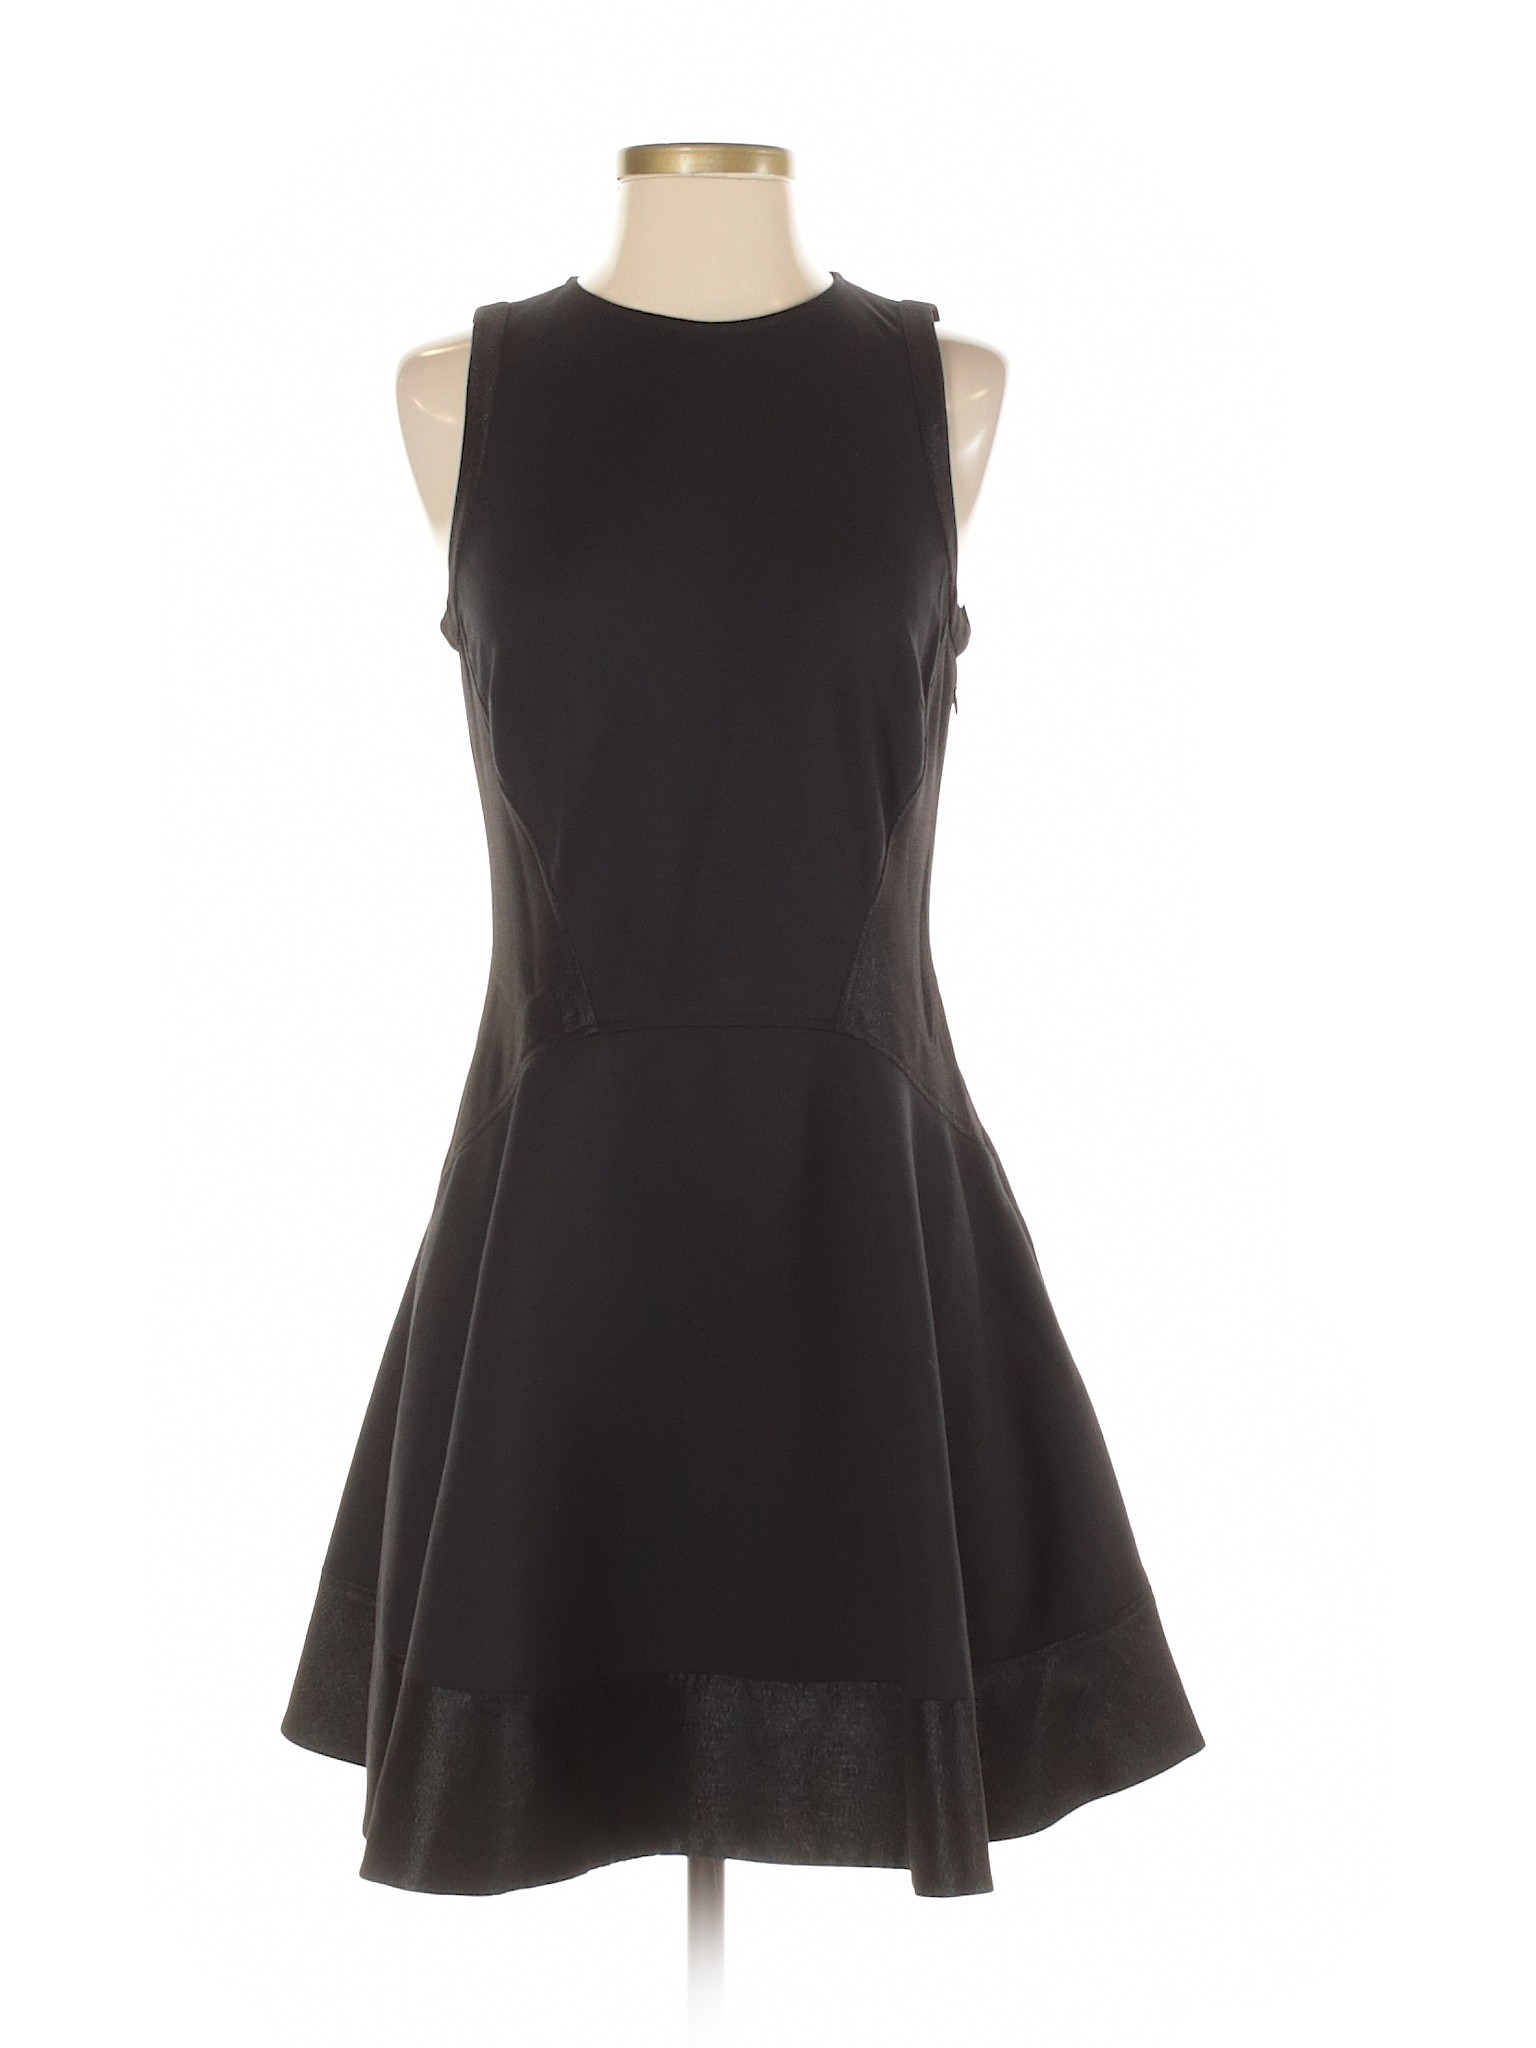 Ted Baker London Women Black Cocktail Dress 6 | eBay